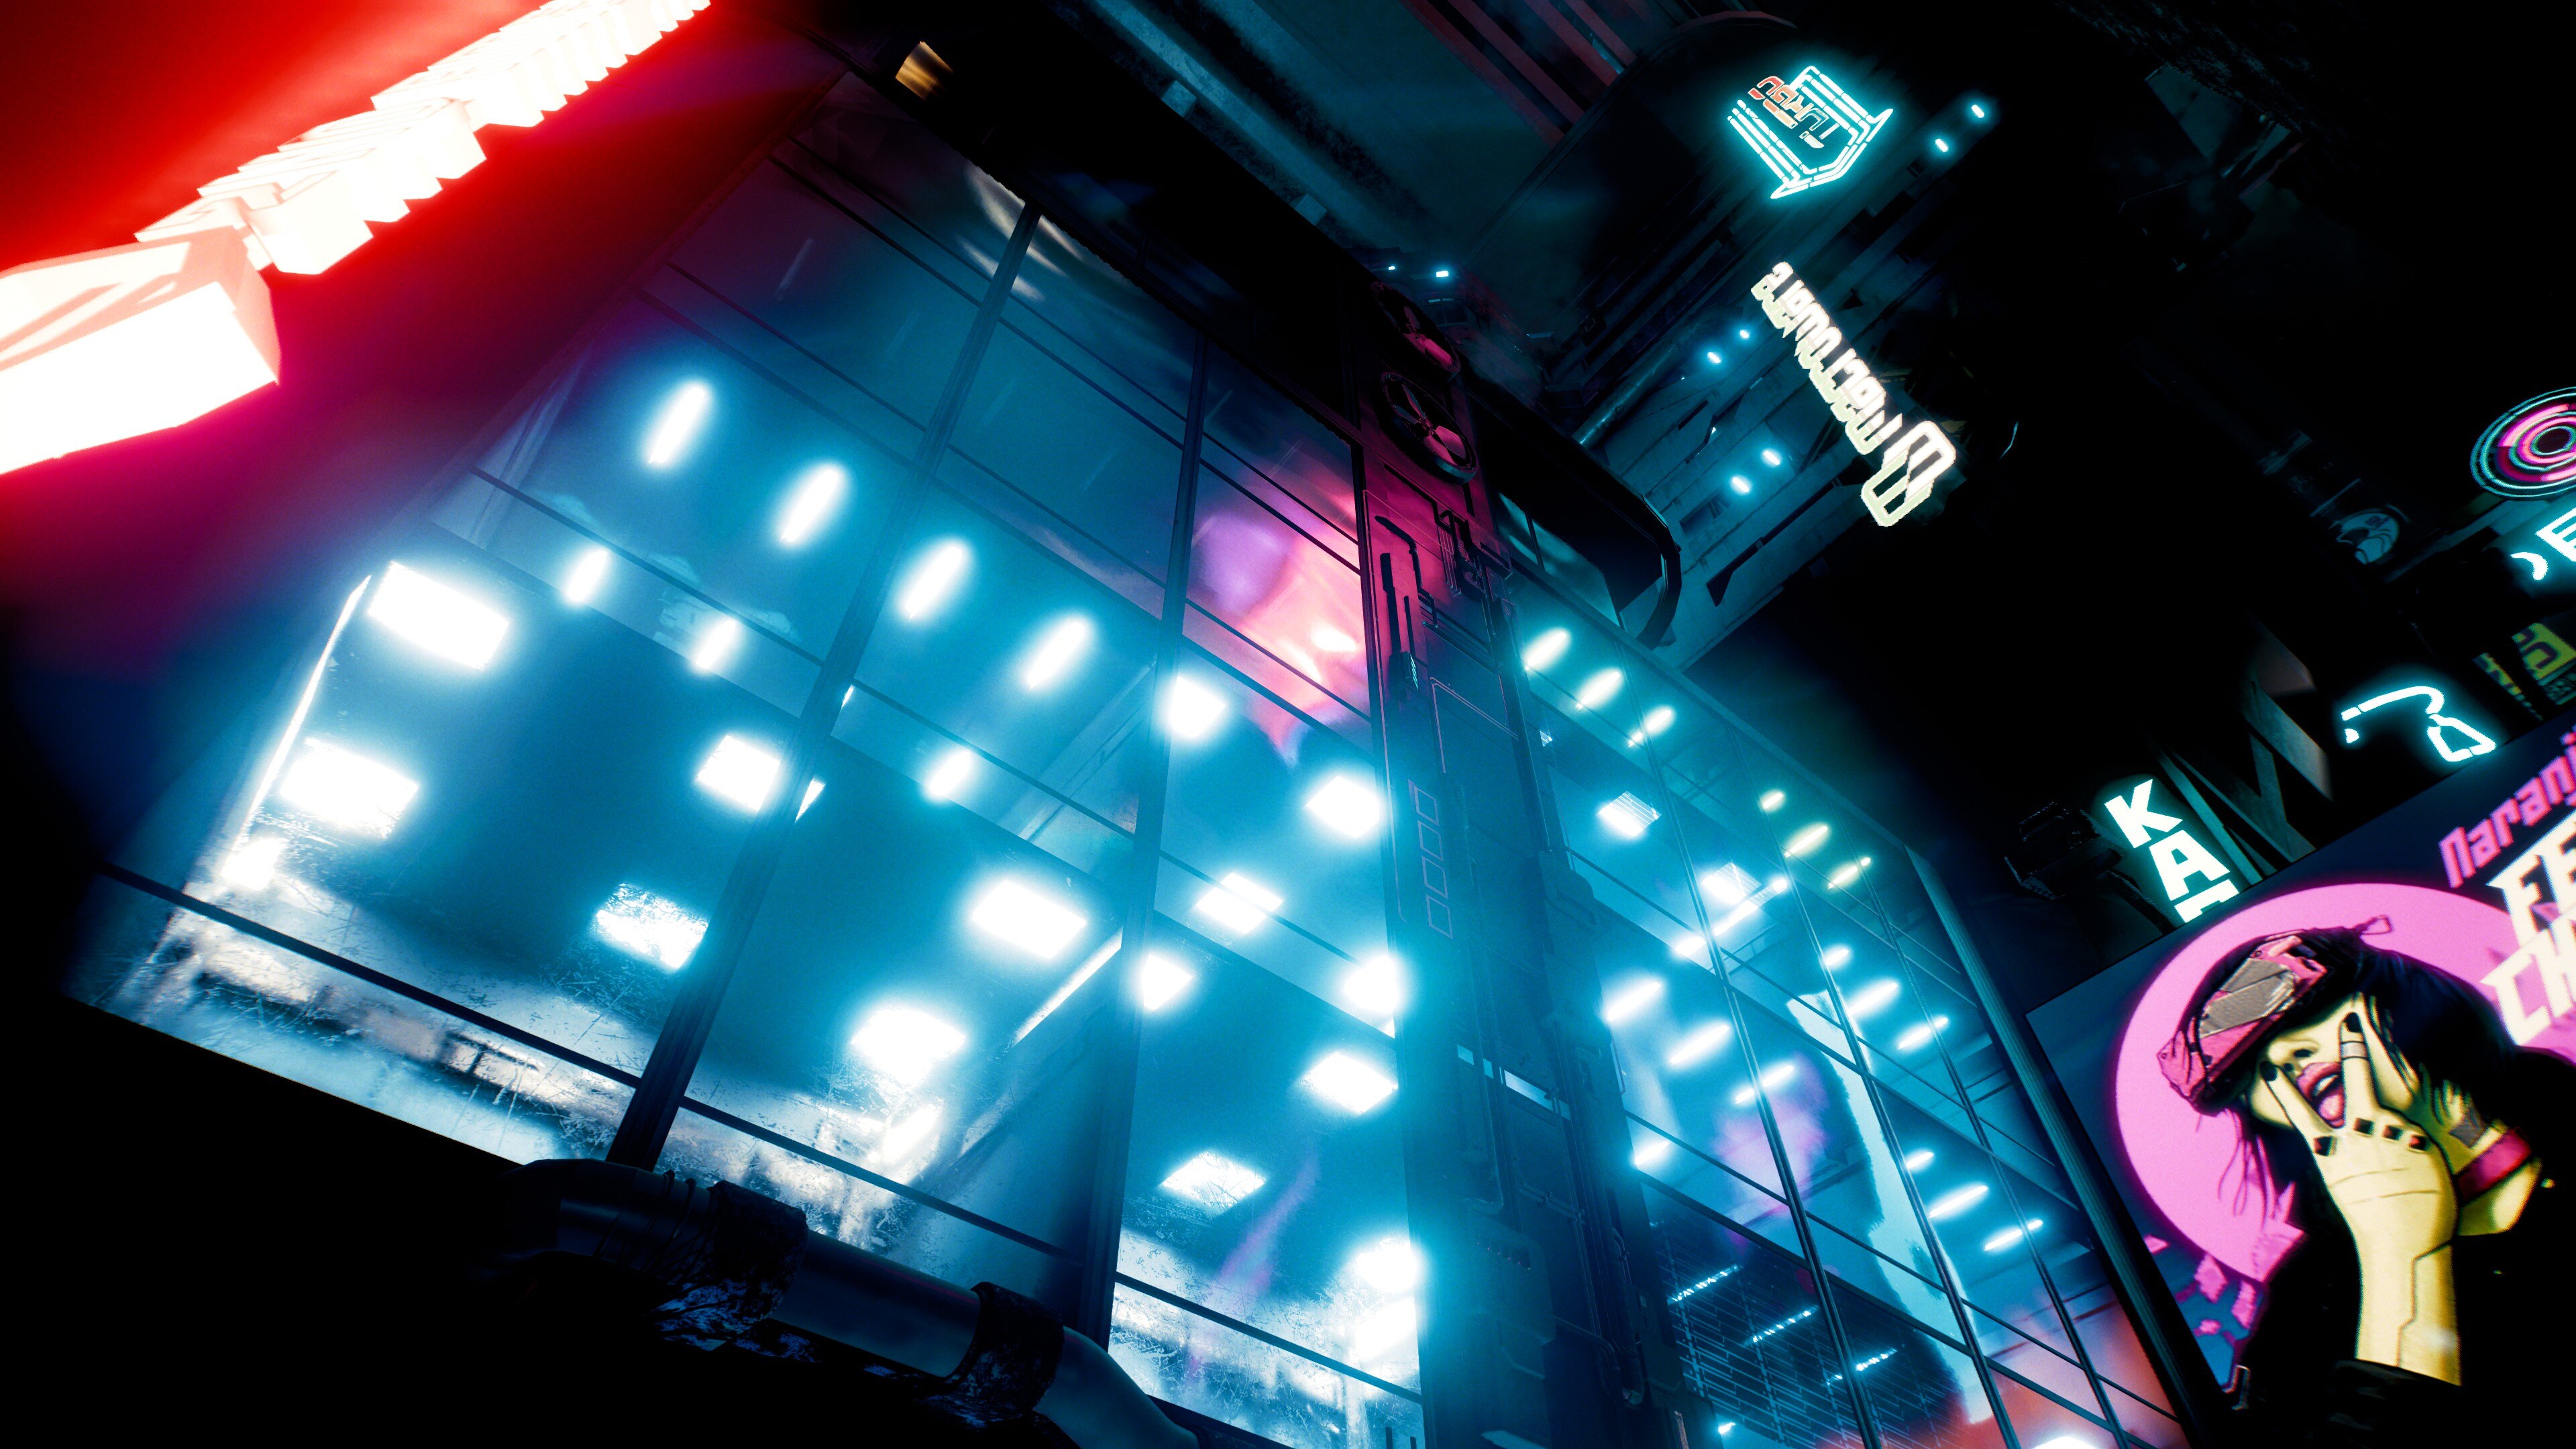 Cyberpunk 2077 Cyberpunk City Lights Video Game Art Video Games Neon Lights 3840x2160